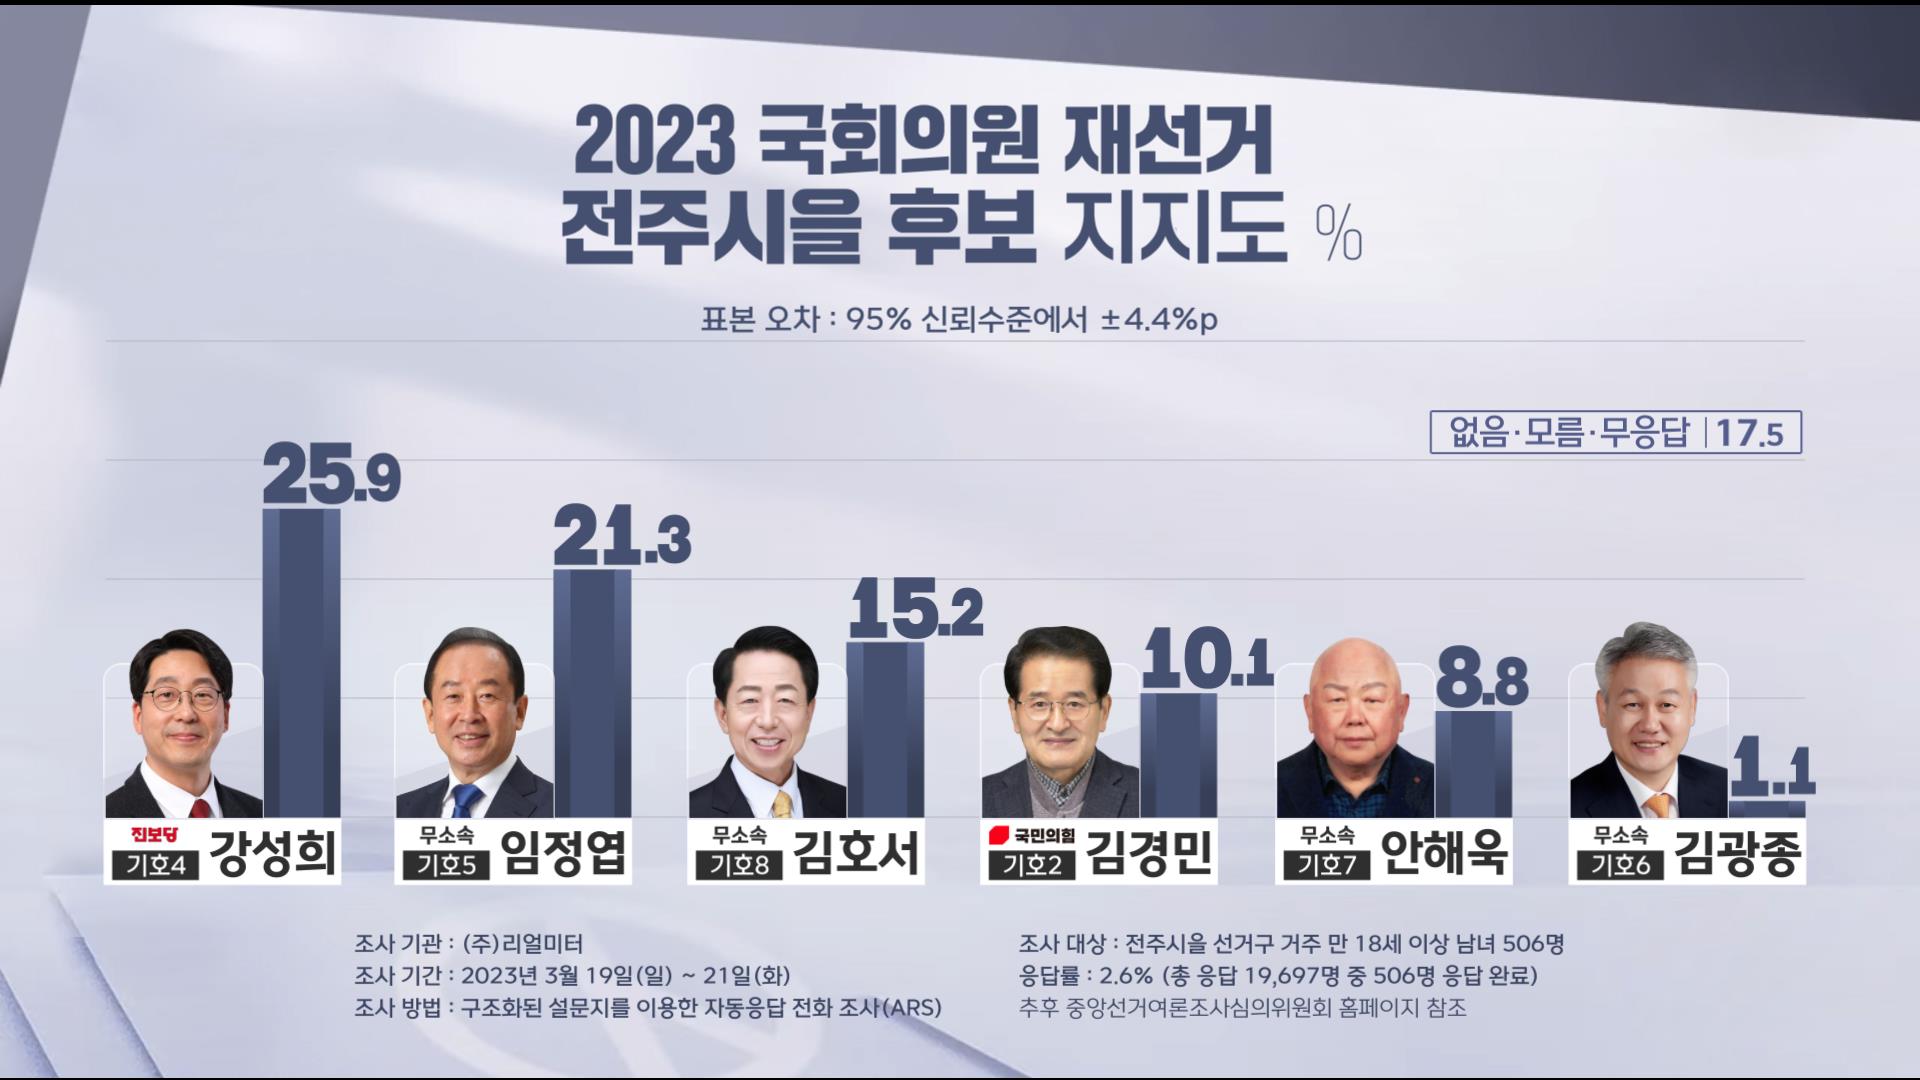 '전주을' 국회의원 재선거..강성희(25.9%)-임정엽(21.3%) 선두권 각축